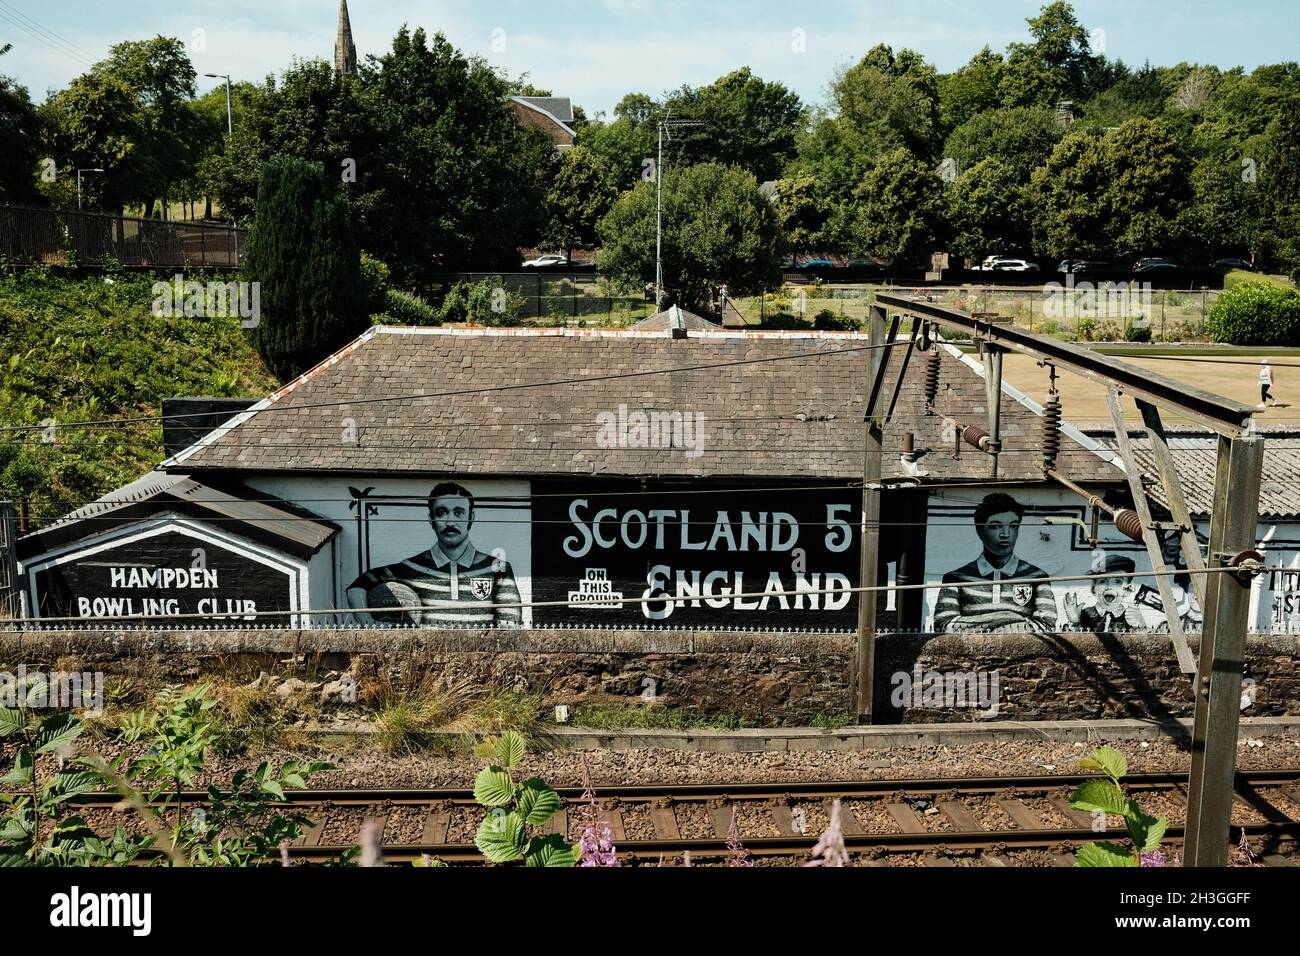 Schottisches Fußballgemälde, Glasgow. Schottland V England international. Hampden Bowling Club. Cathcart Railway Line, Schottland. Mit Andew Watson. Stockfoto